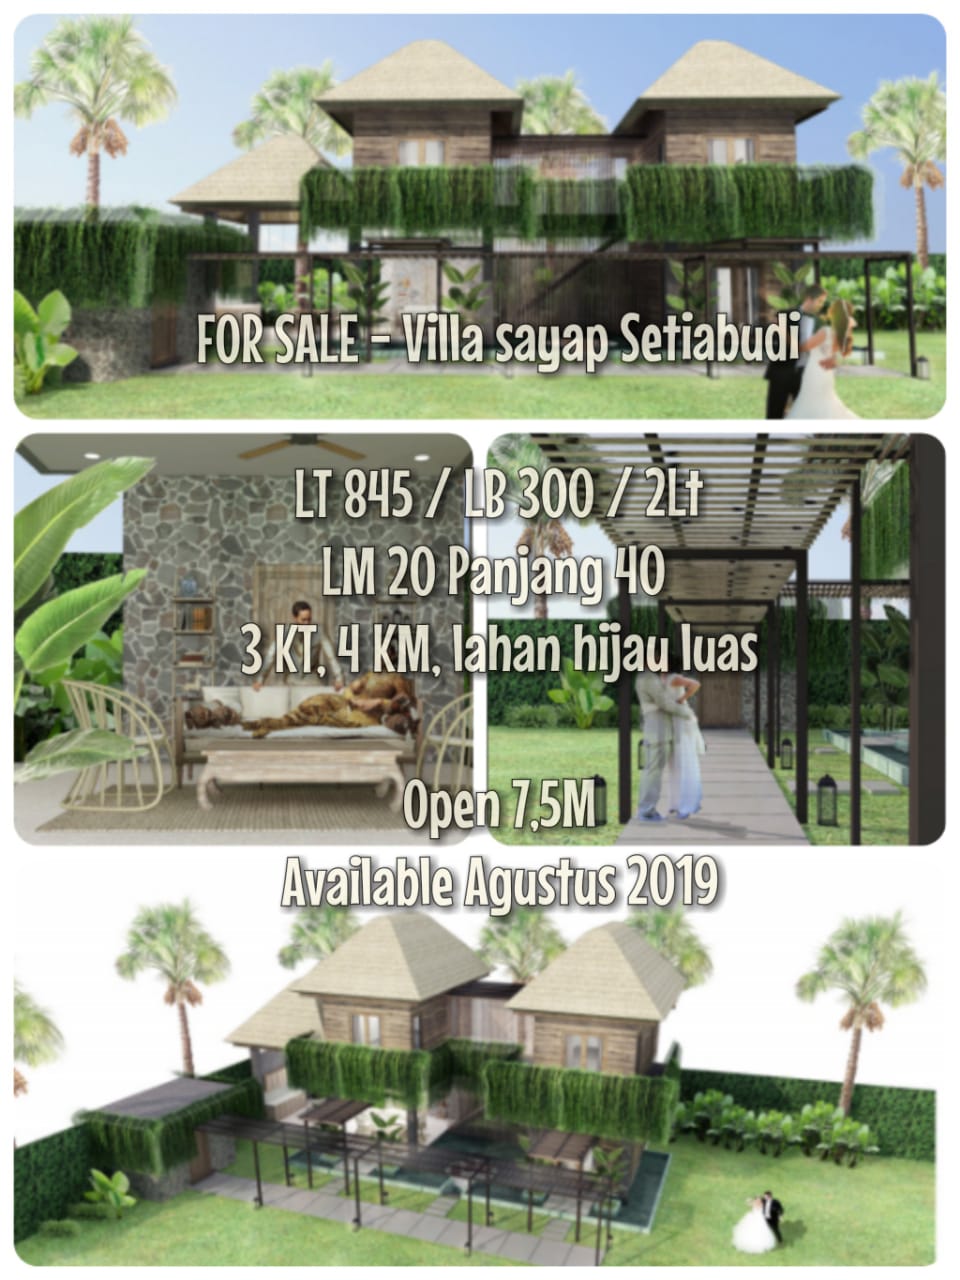 For Sale Villa Sayap Setiabudi